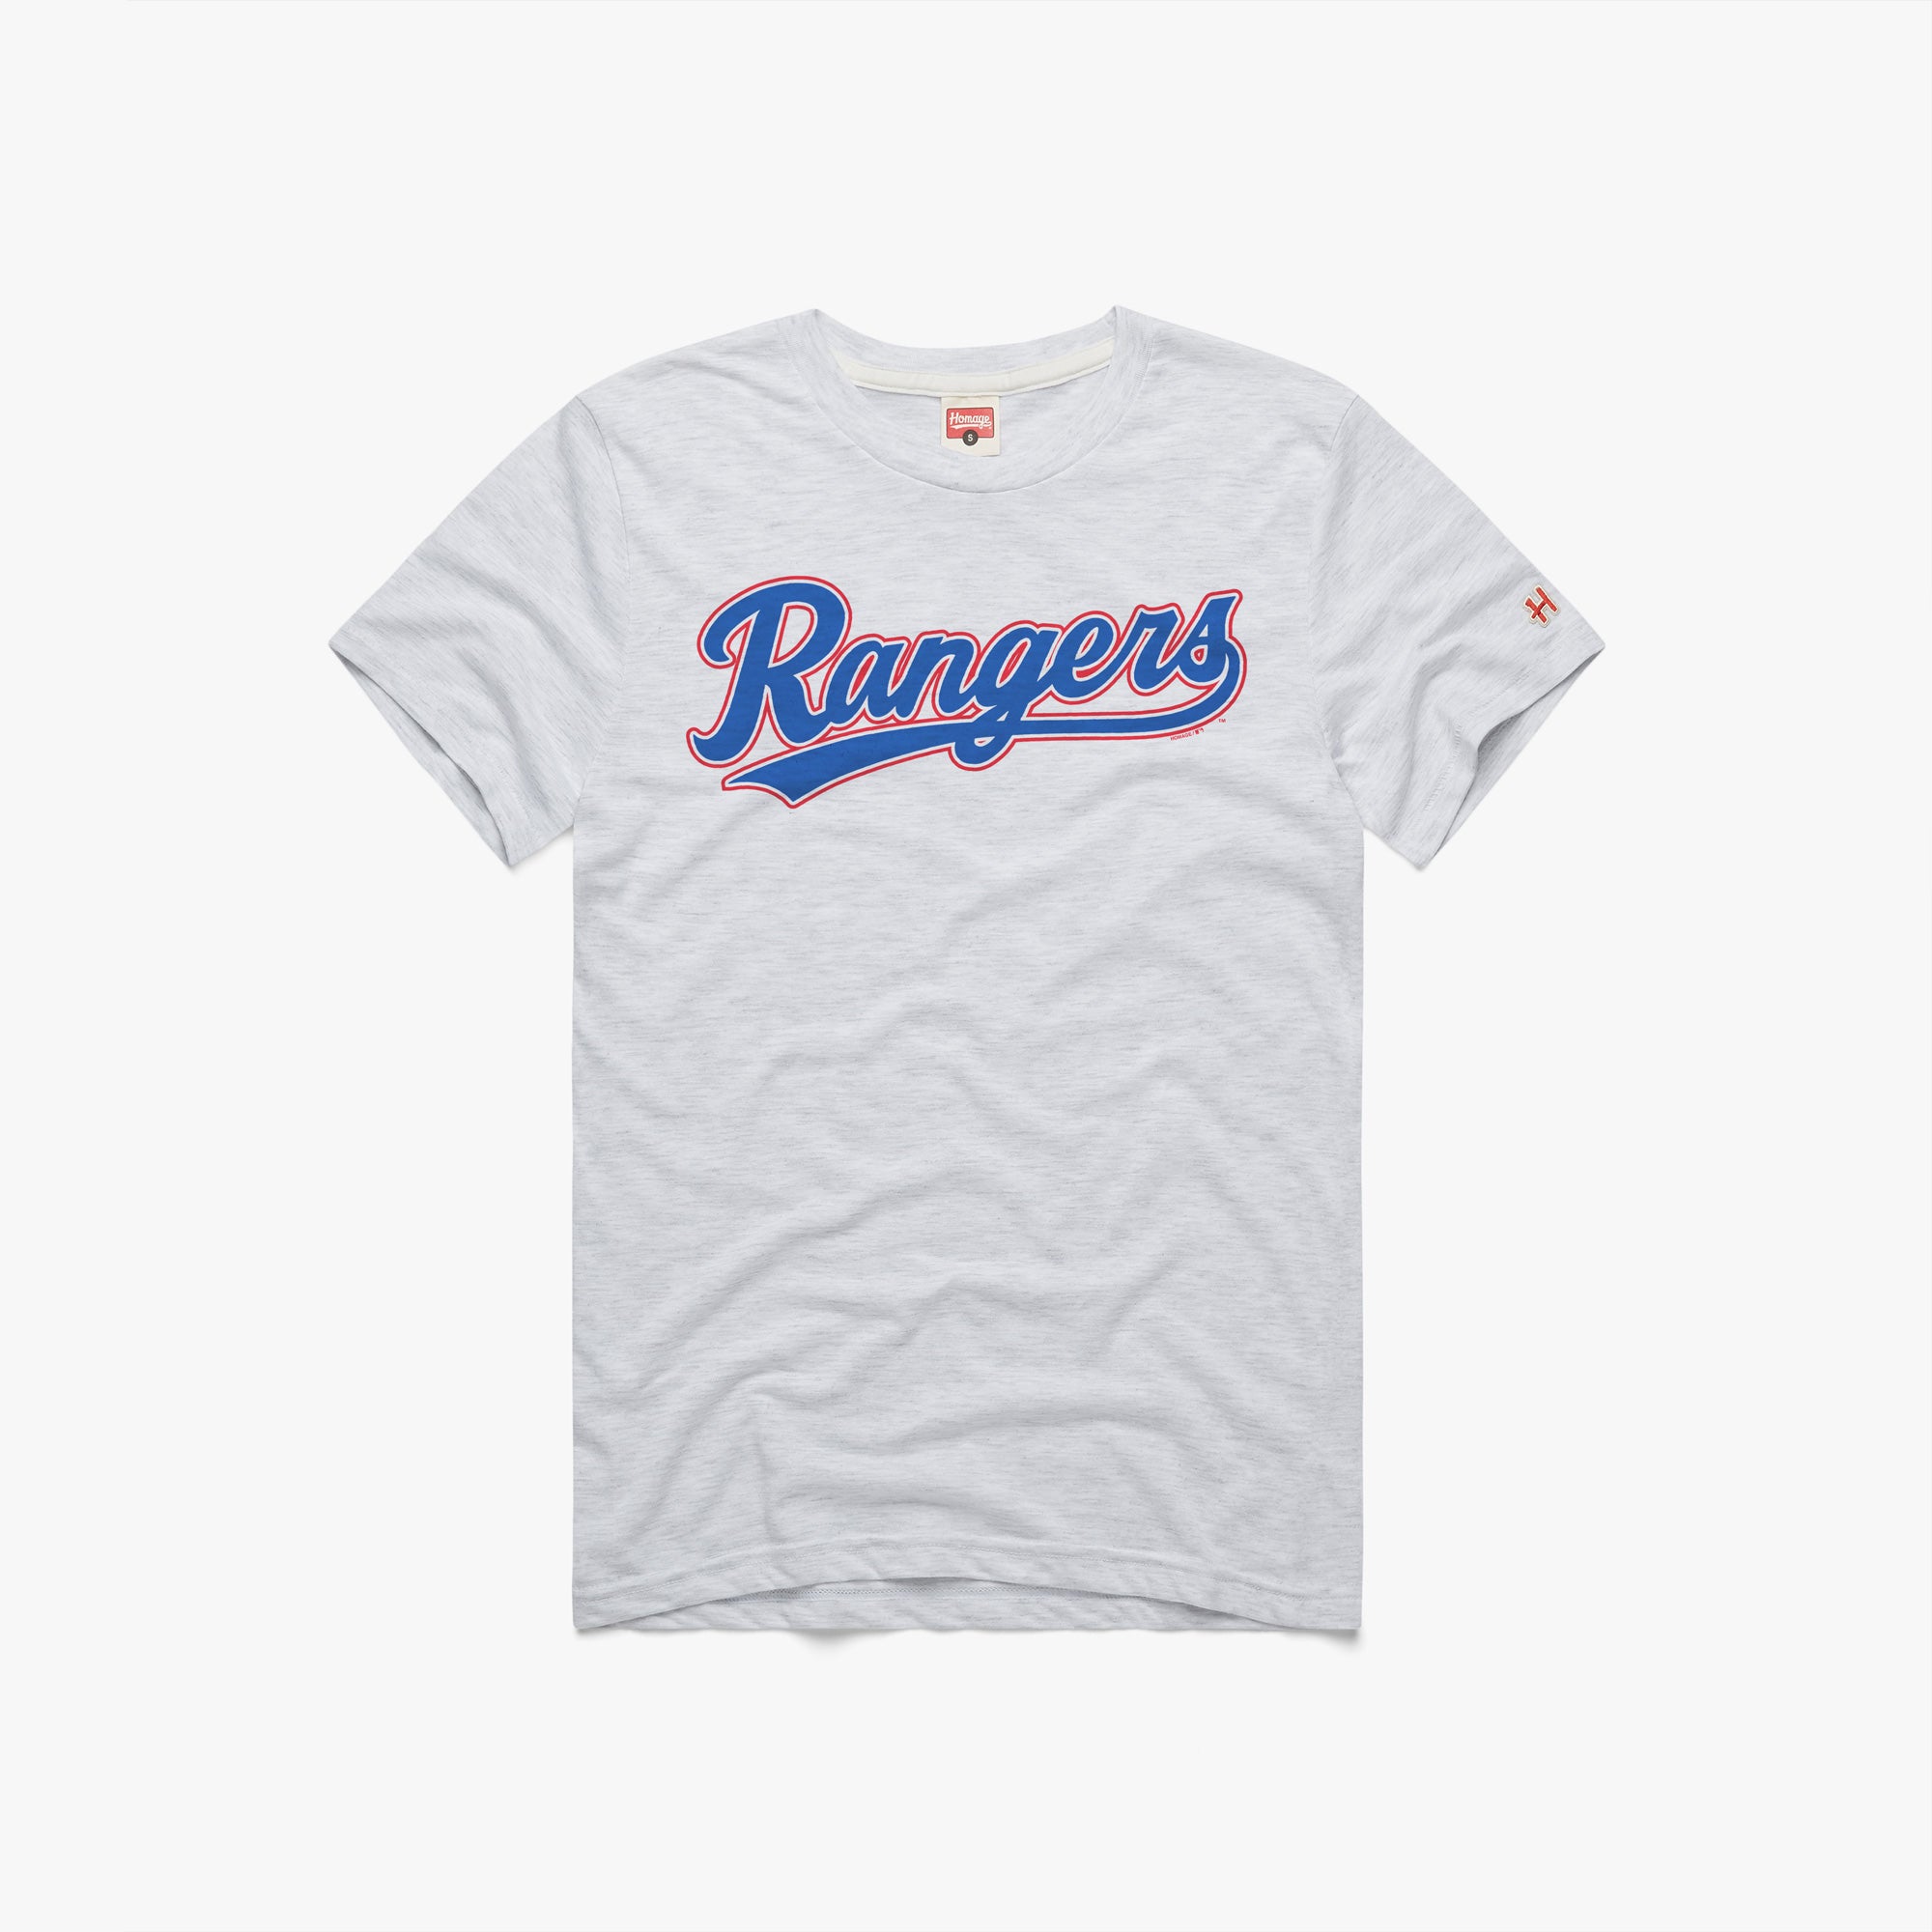 Texas Rangers retro jersey